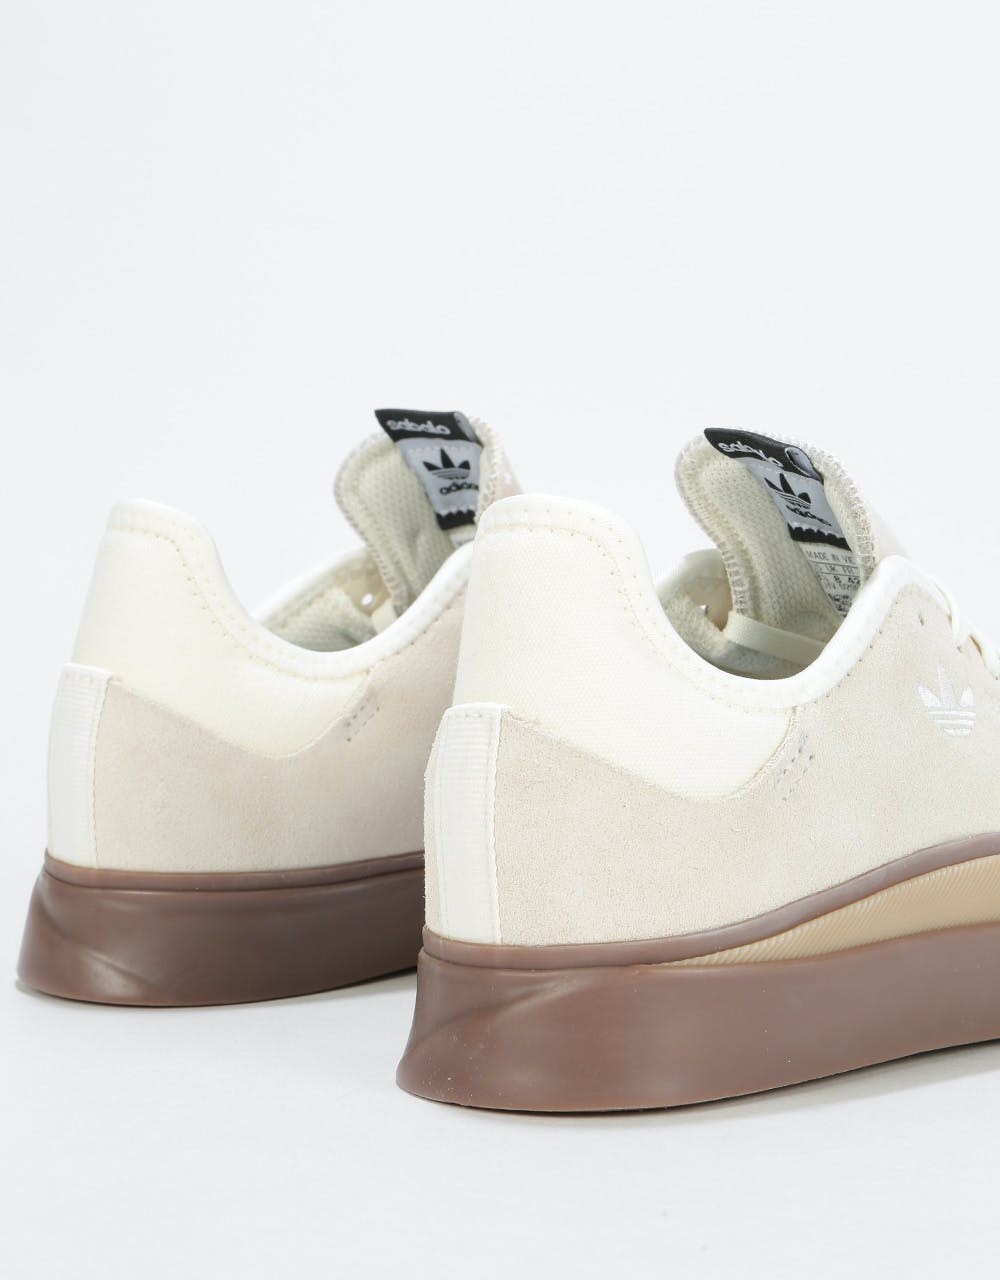 Adidas Sabalo Skate Shoes - Off White/Gum/Gum